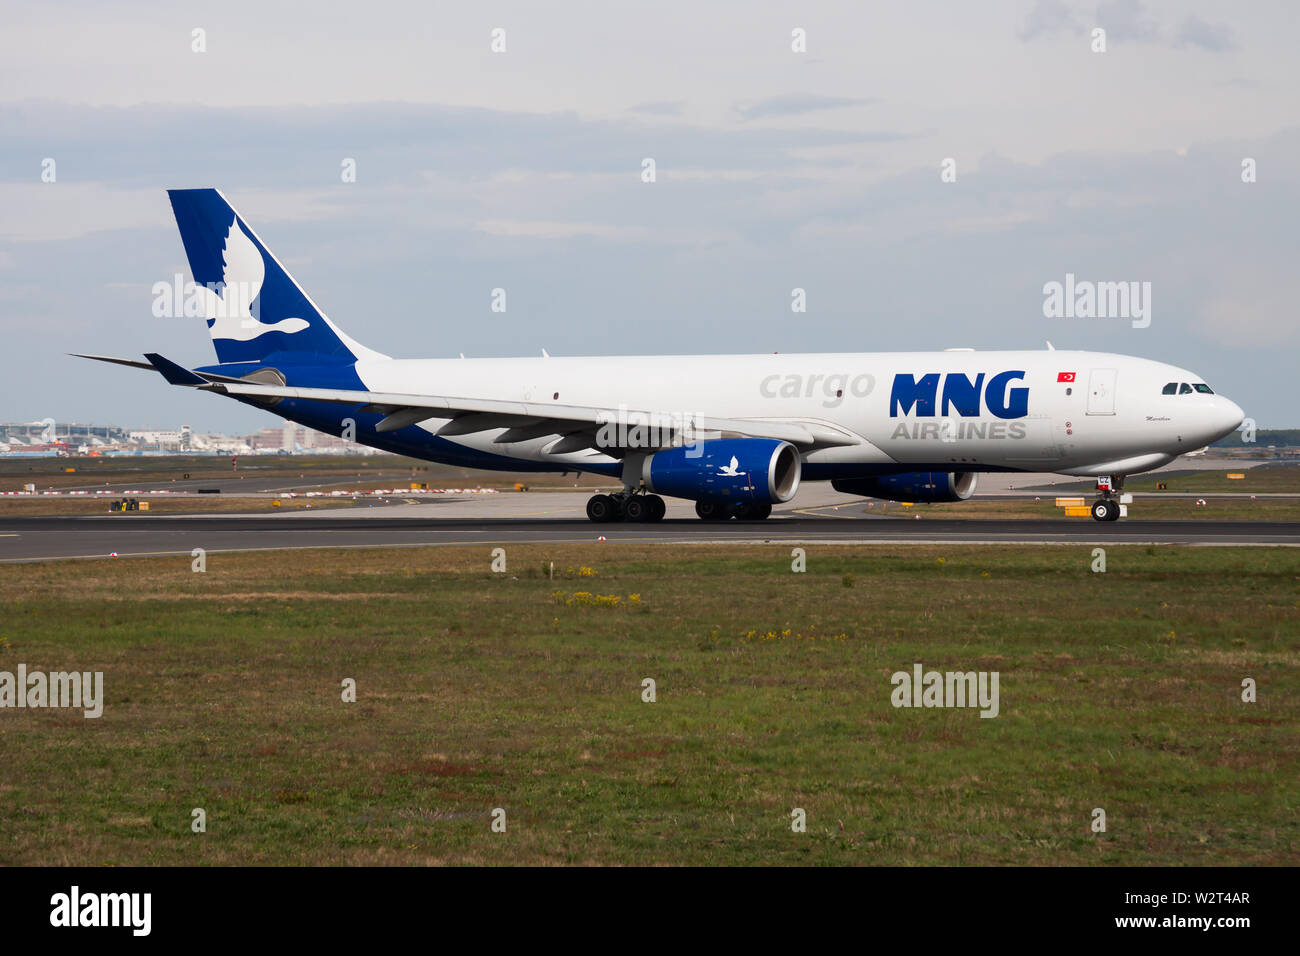 Francoforte / GERMANIA - Aprile 26, 2015: MNG Airlines Cargo Airbus A330-200 TC-MCZ aereo cargo di partenza all'aeroporto di Francoforte Foto Stock